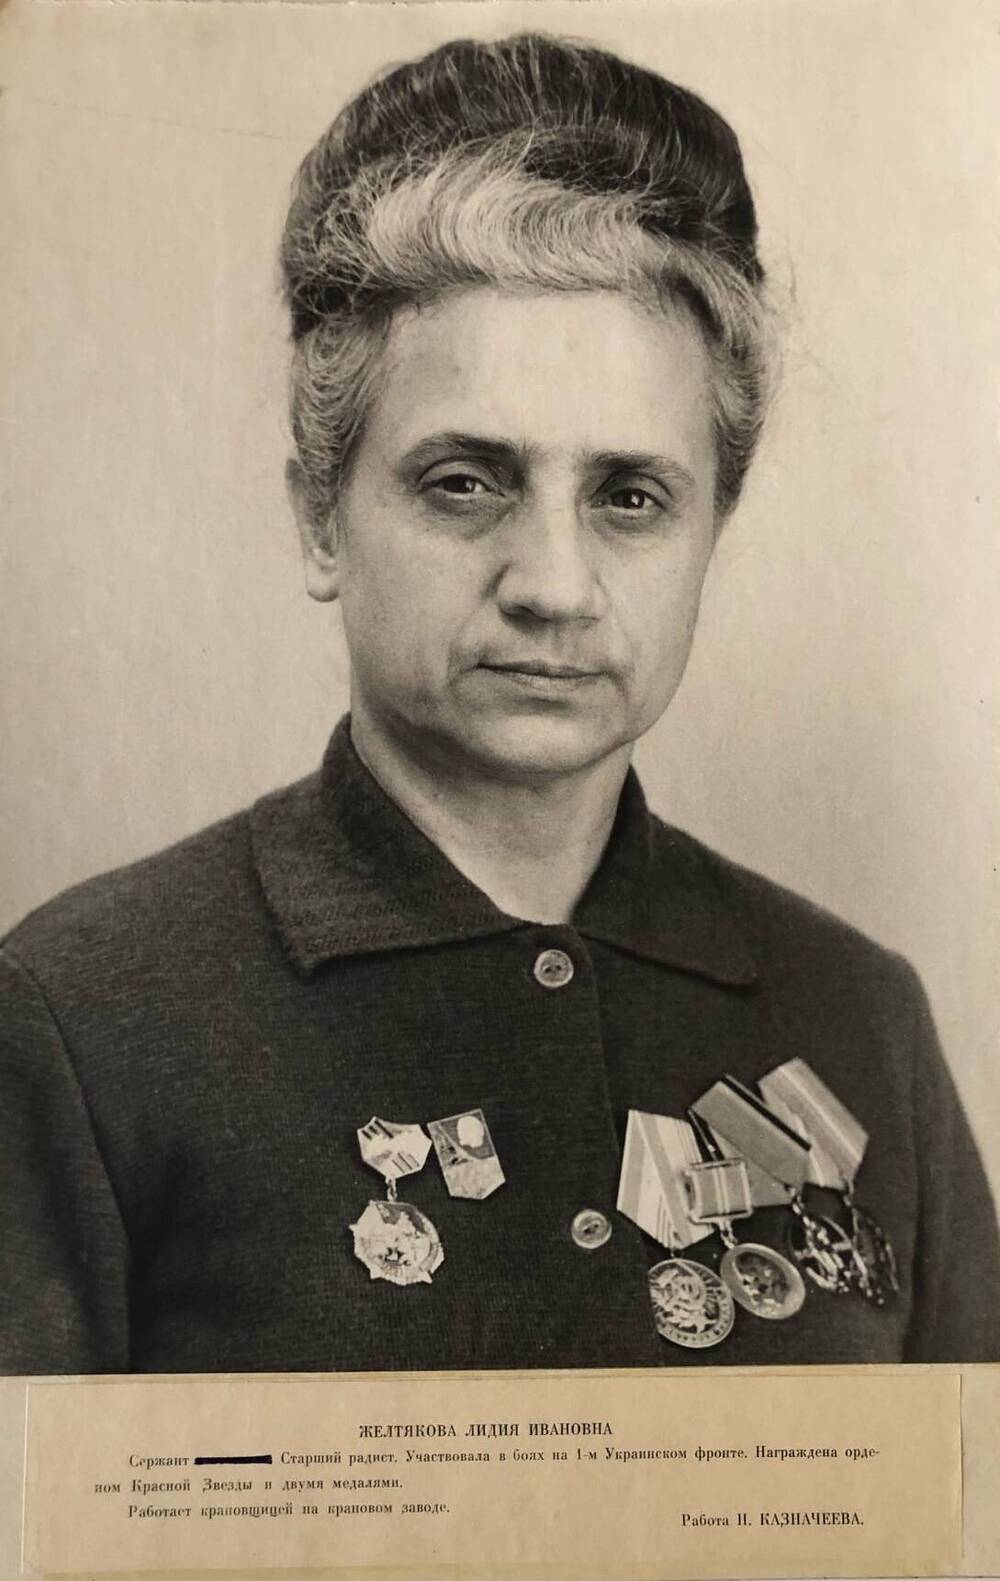 Фотография Желтяковой Лидии Ивановны, участницы Великой Отечественной войны 1941-1945 гг.